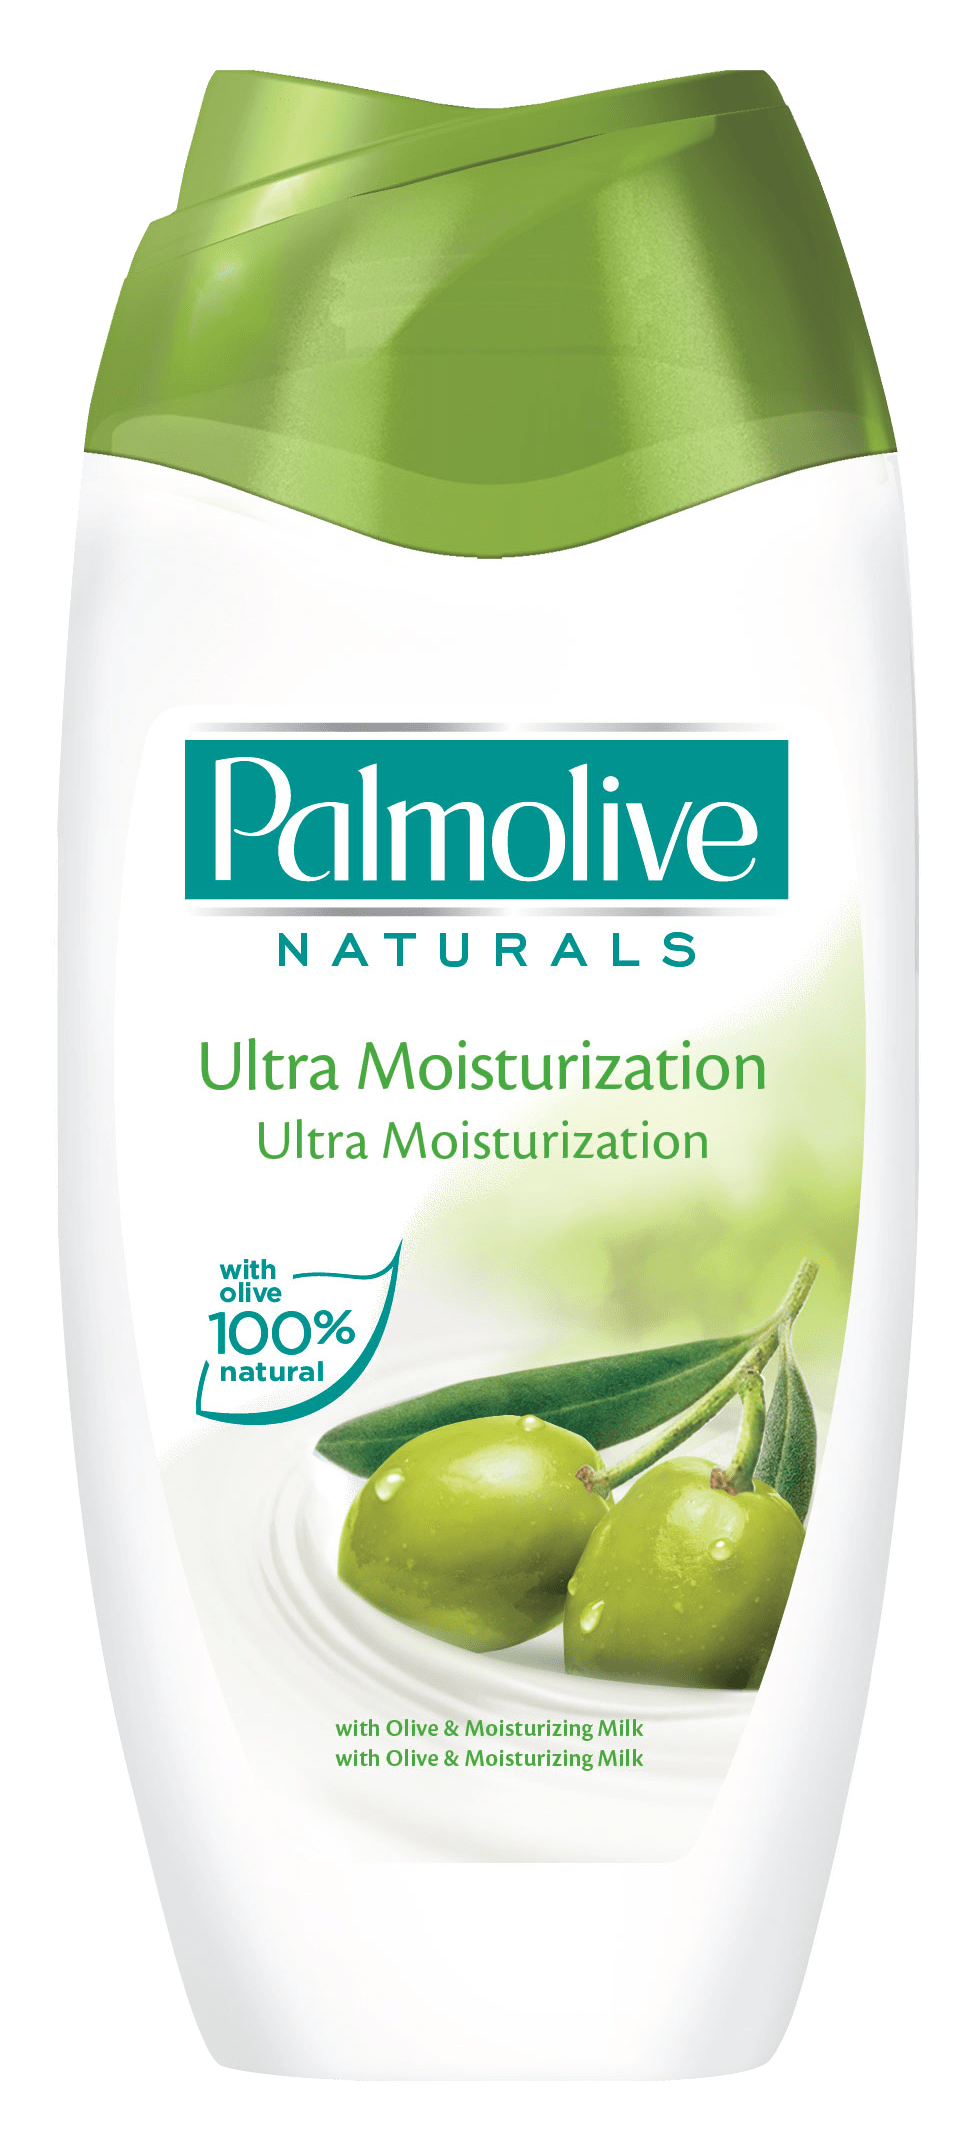  A Palmolive Ultra Moisturization Tusfürdő 100%-ban természetes eredetű olíva és aloe vera kivonattal gazdagított.